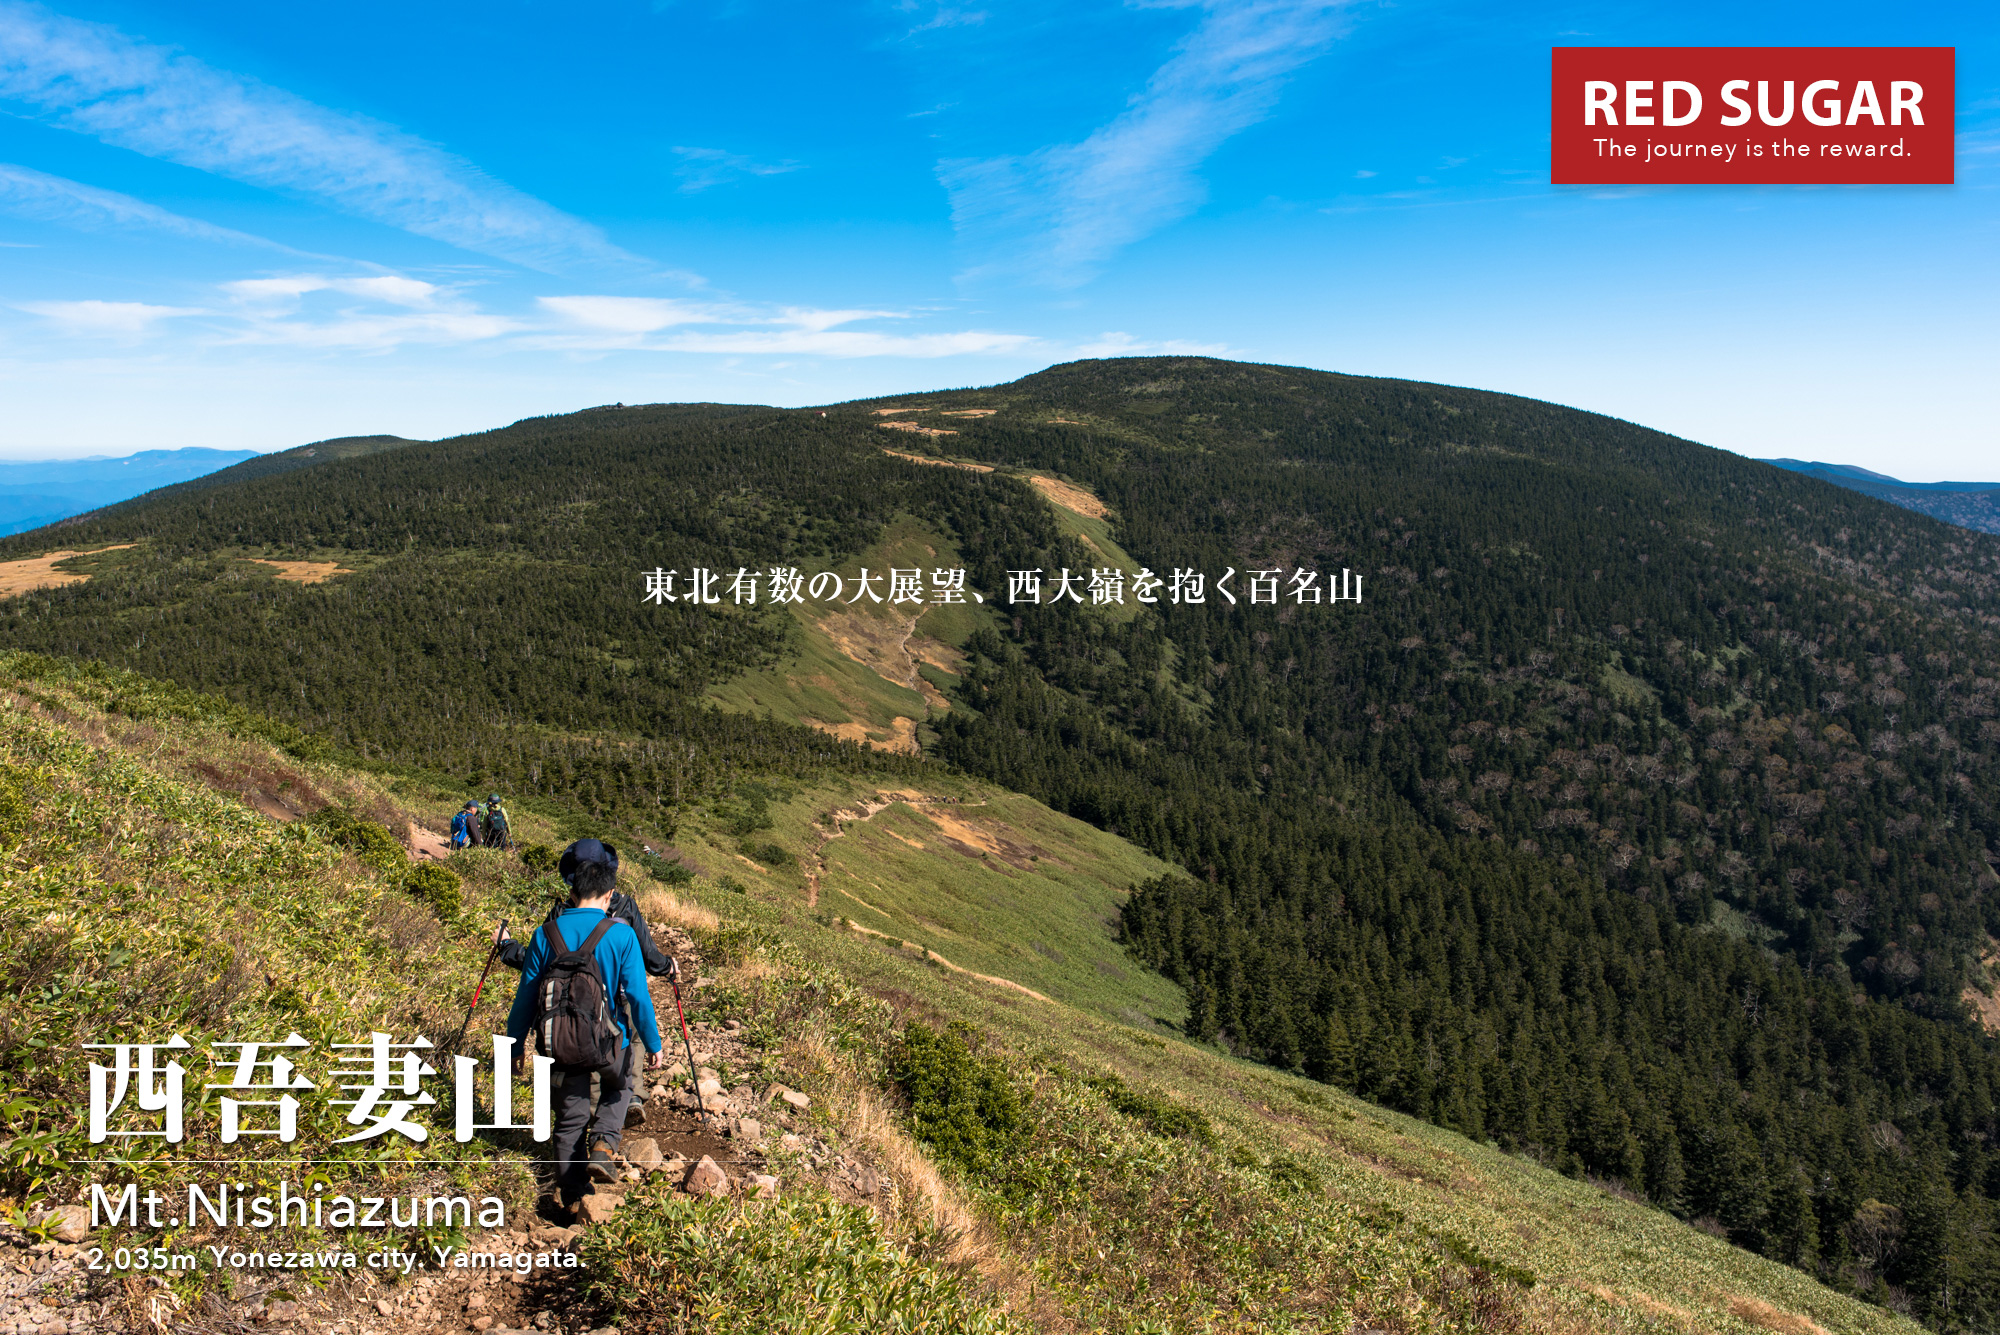 東北 西吾妻山 穏やかなる稜線と百名山を見渡す大展望 滝と森と紅葉に彩られた百名山の旅 Red Sugar